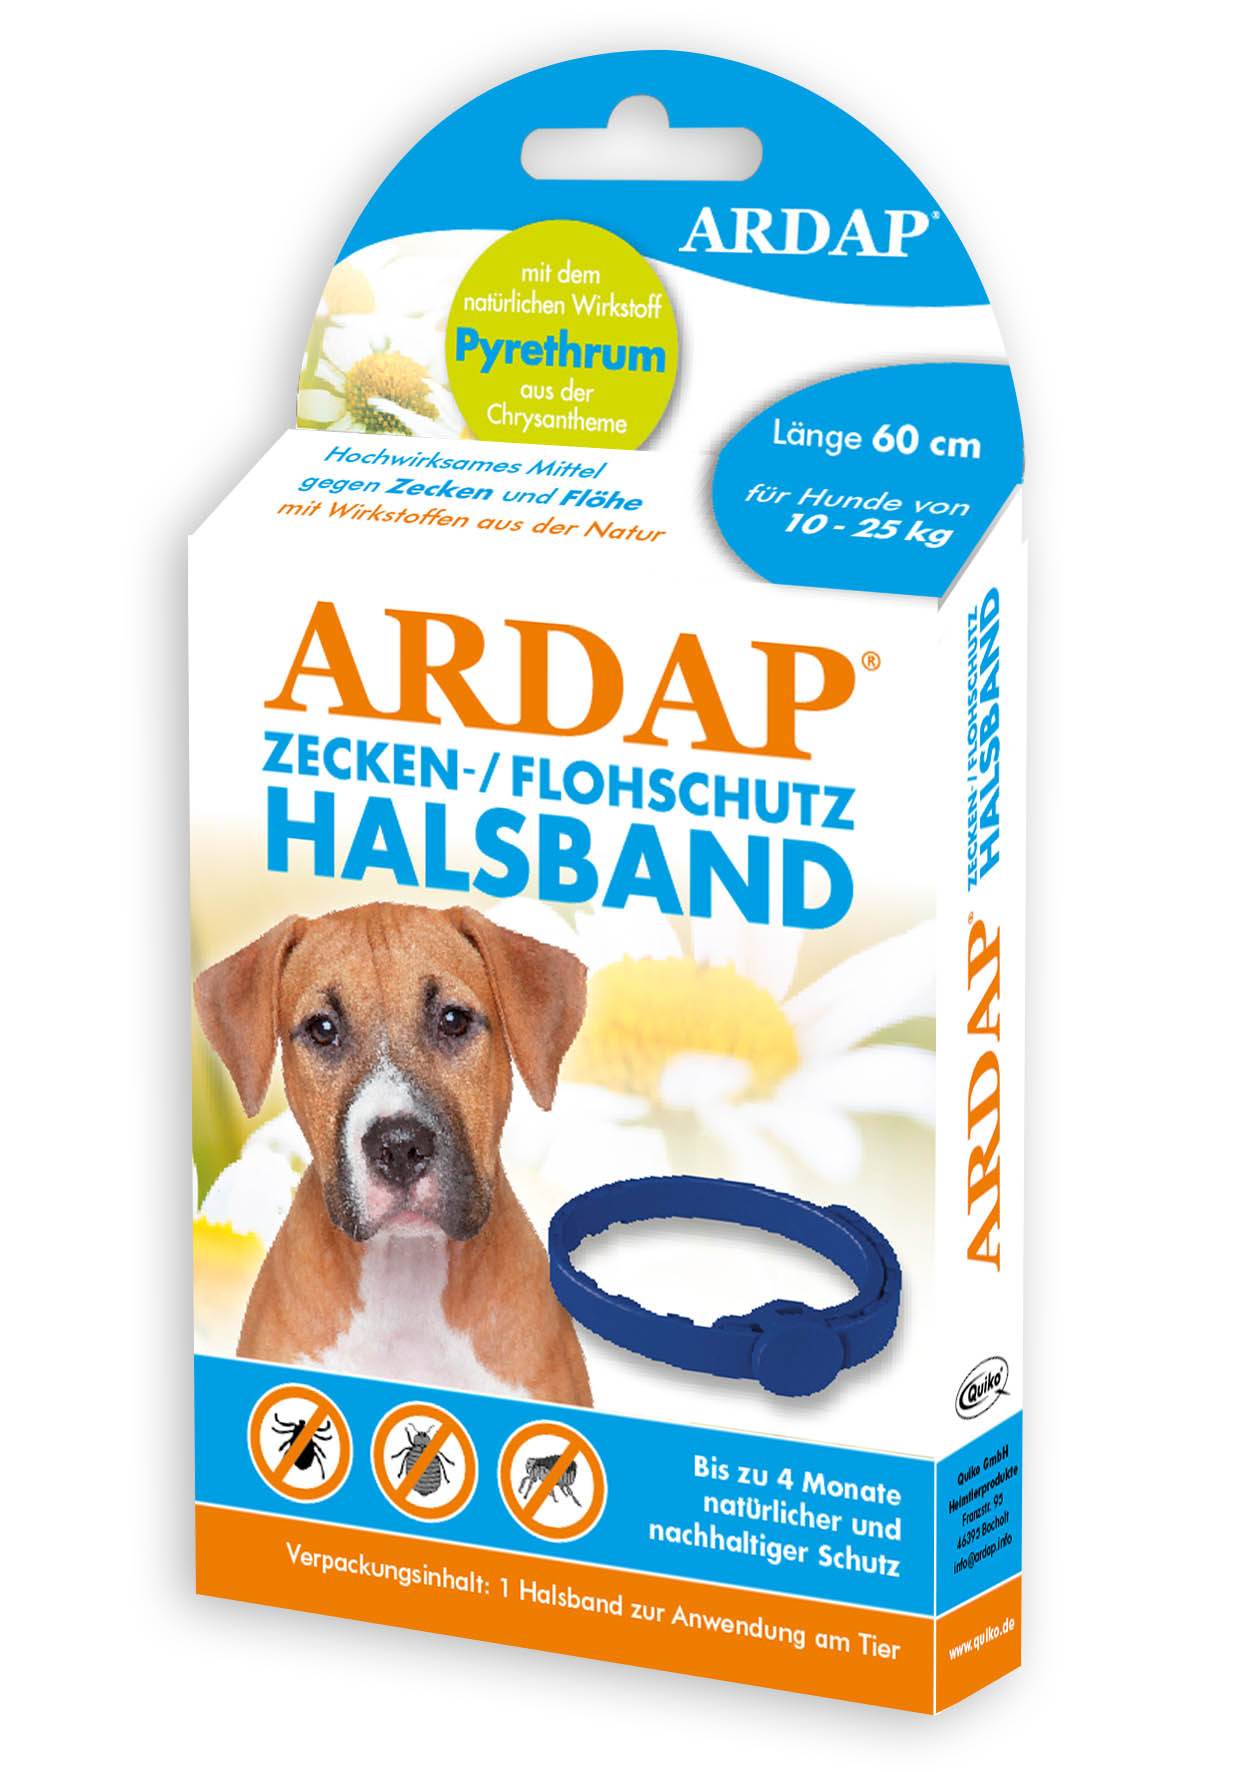 Ardap Zecken- und Floh halsband für mittlere Hunde bis 25kg länge 60cm